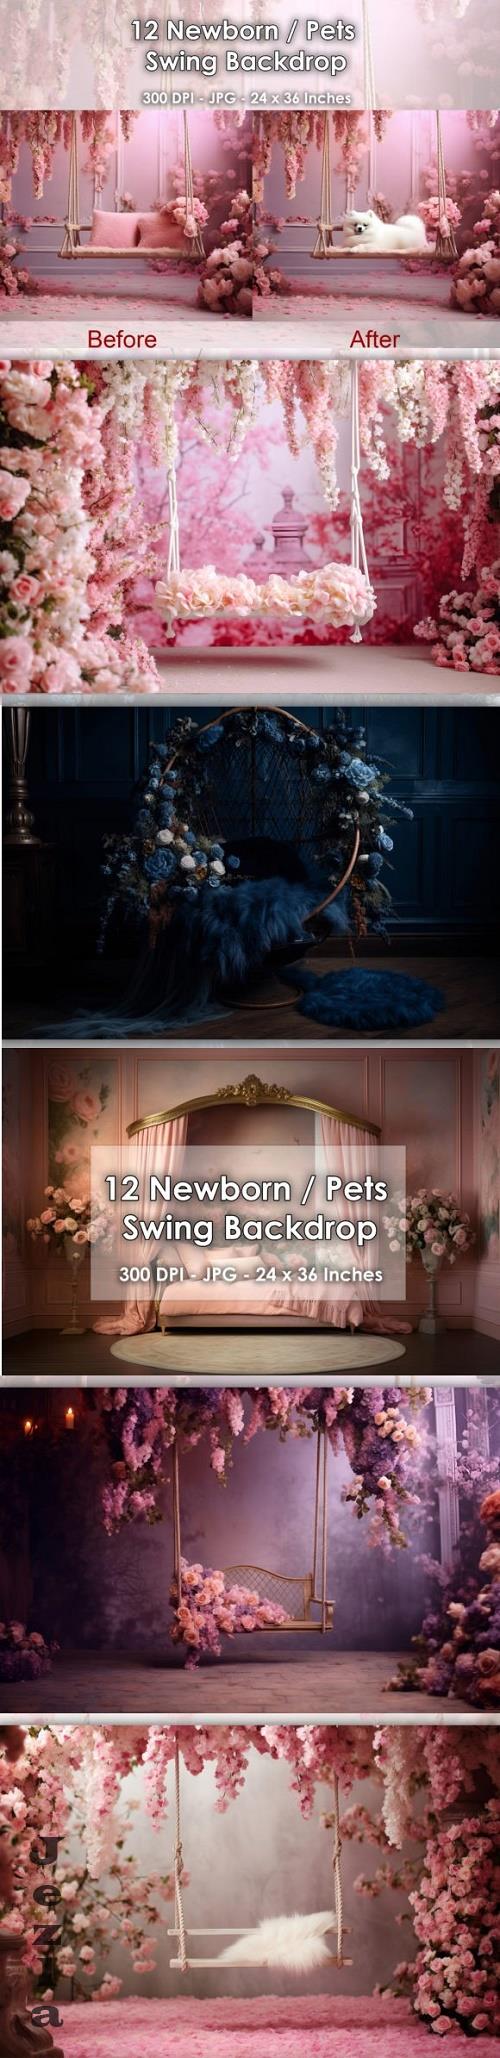 12 Newborn / Pets Swing Backdrop JPG